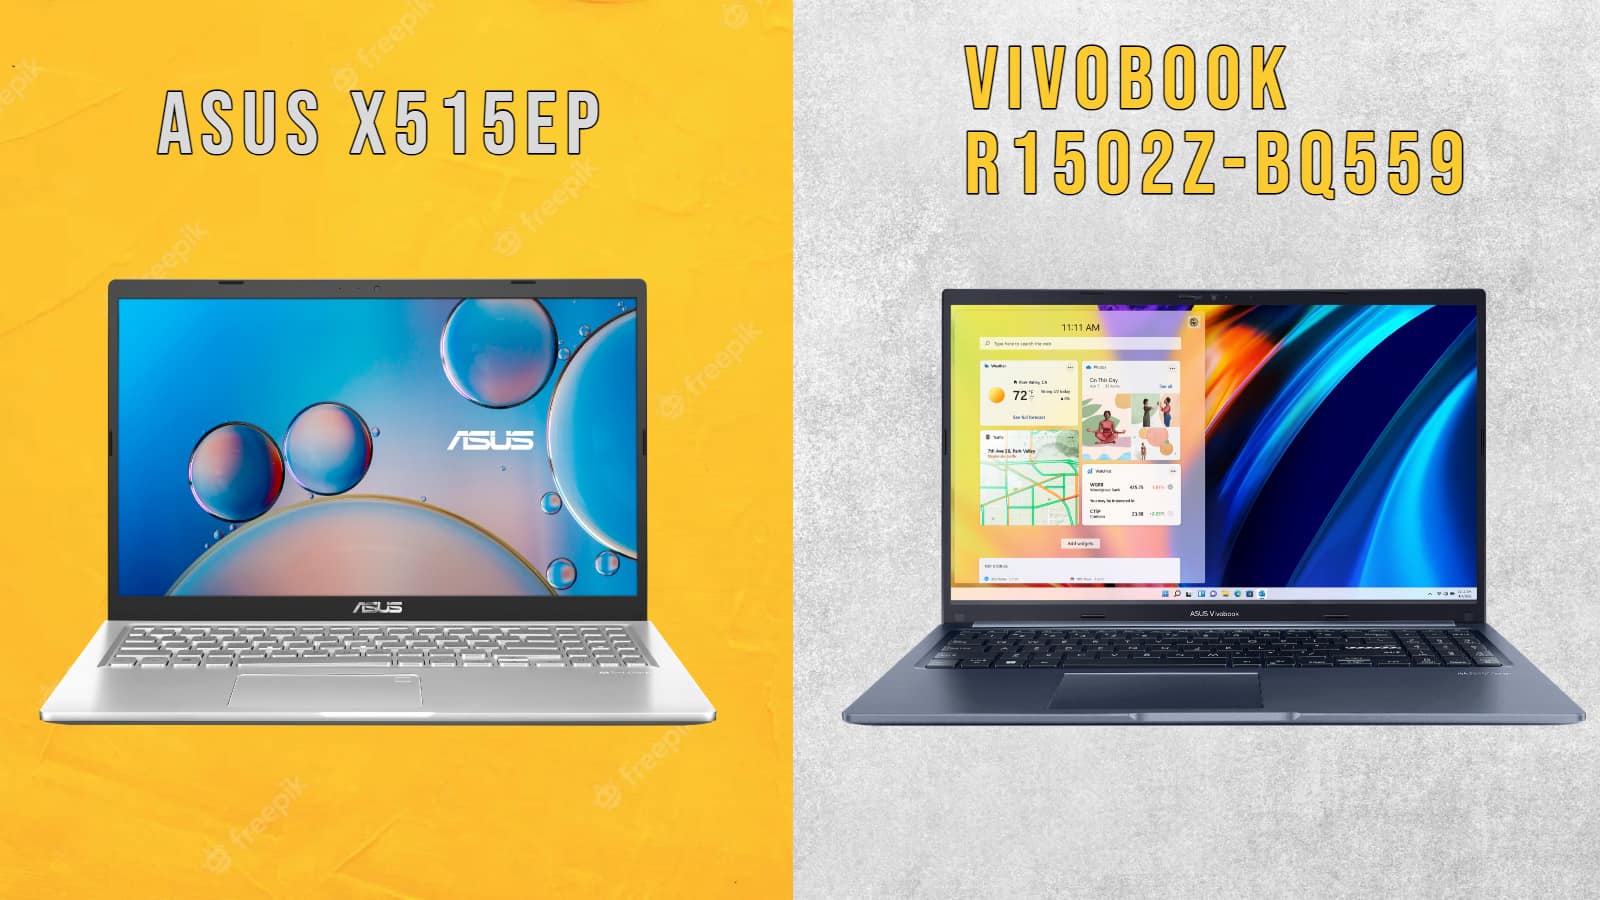 مقایسه VivoBook R1502Z-BQ55 با X515EP؛ کدام لپ تاپ اقتصادی i7 ایسوس بهتر است؟